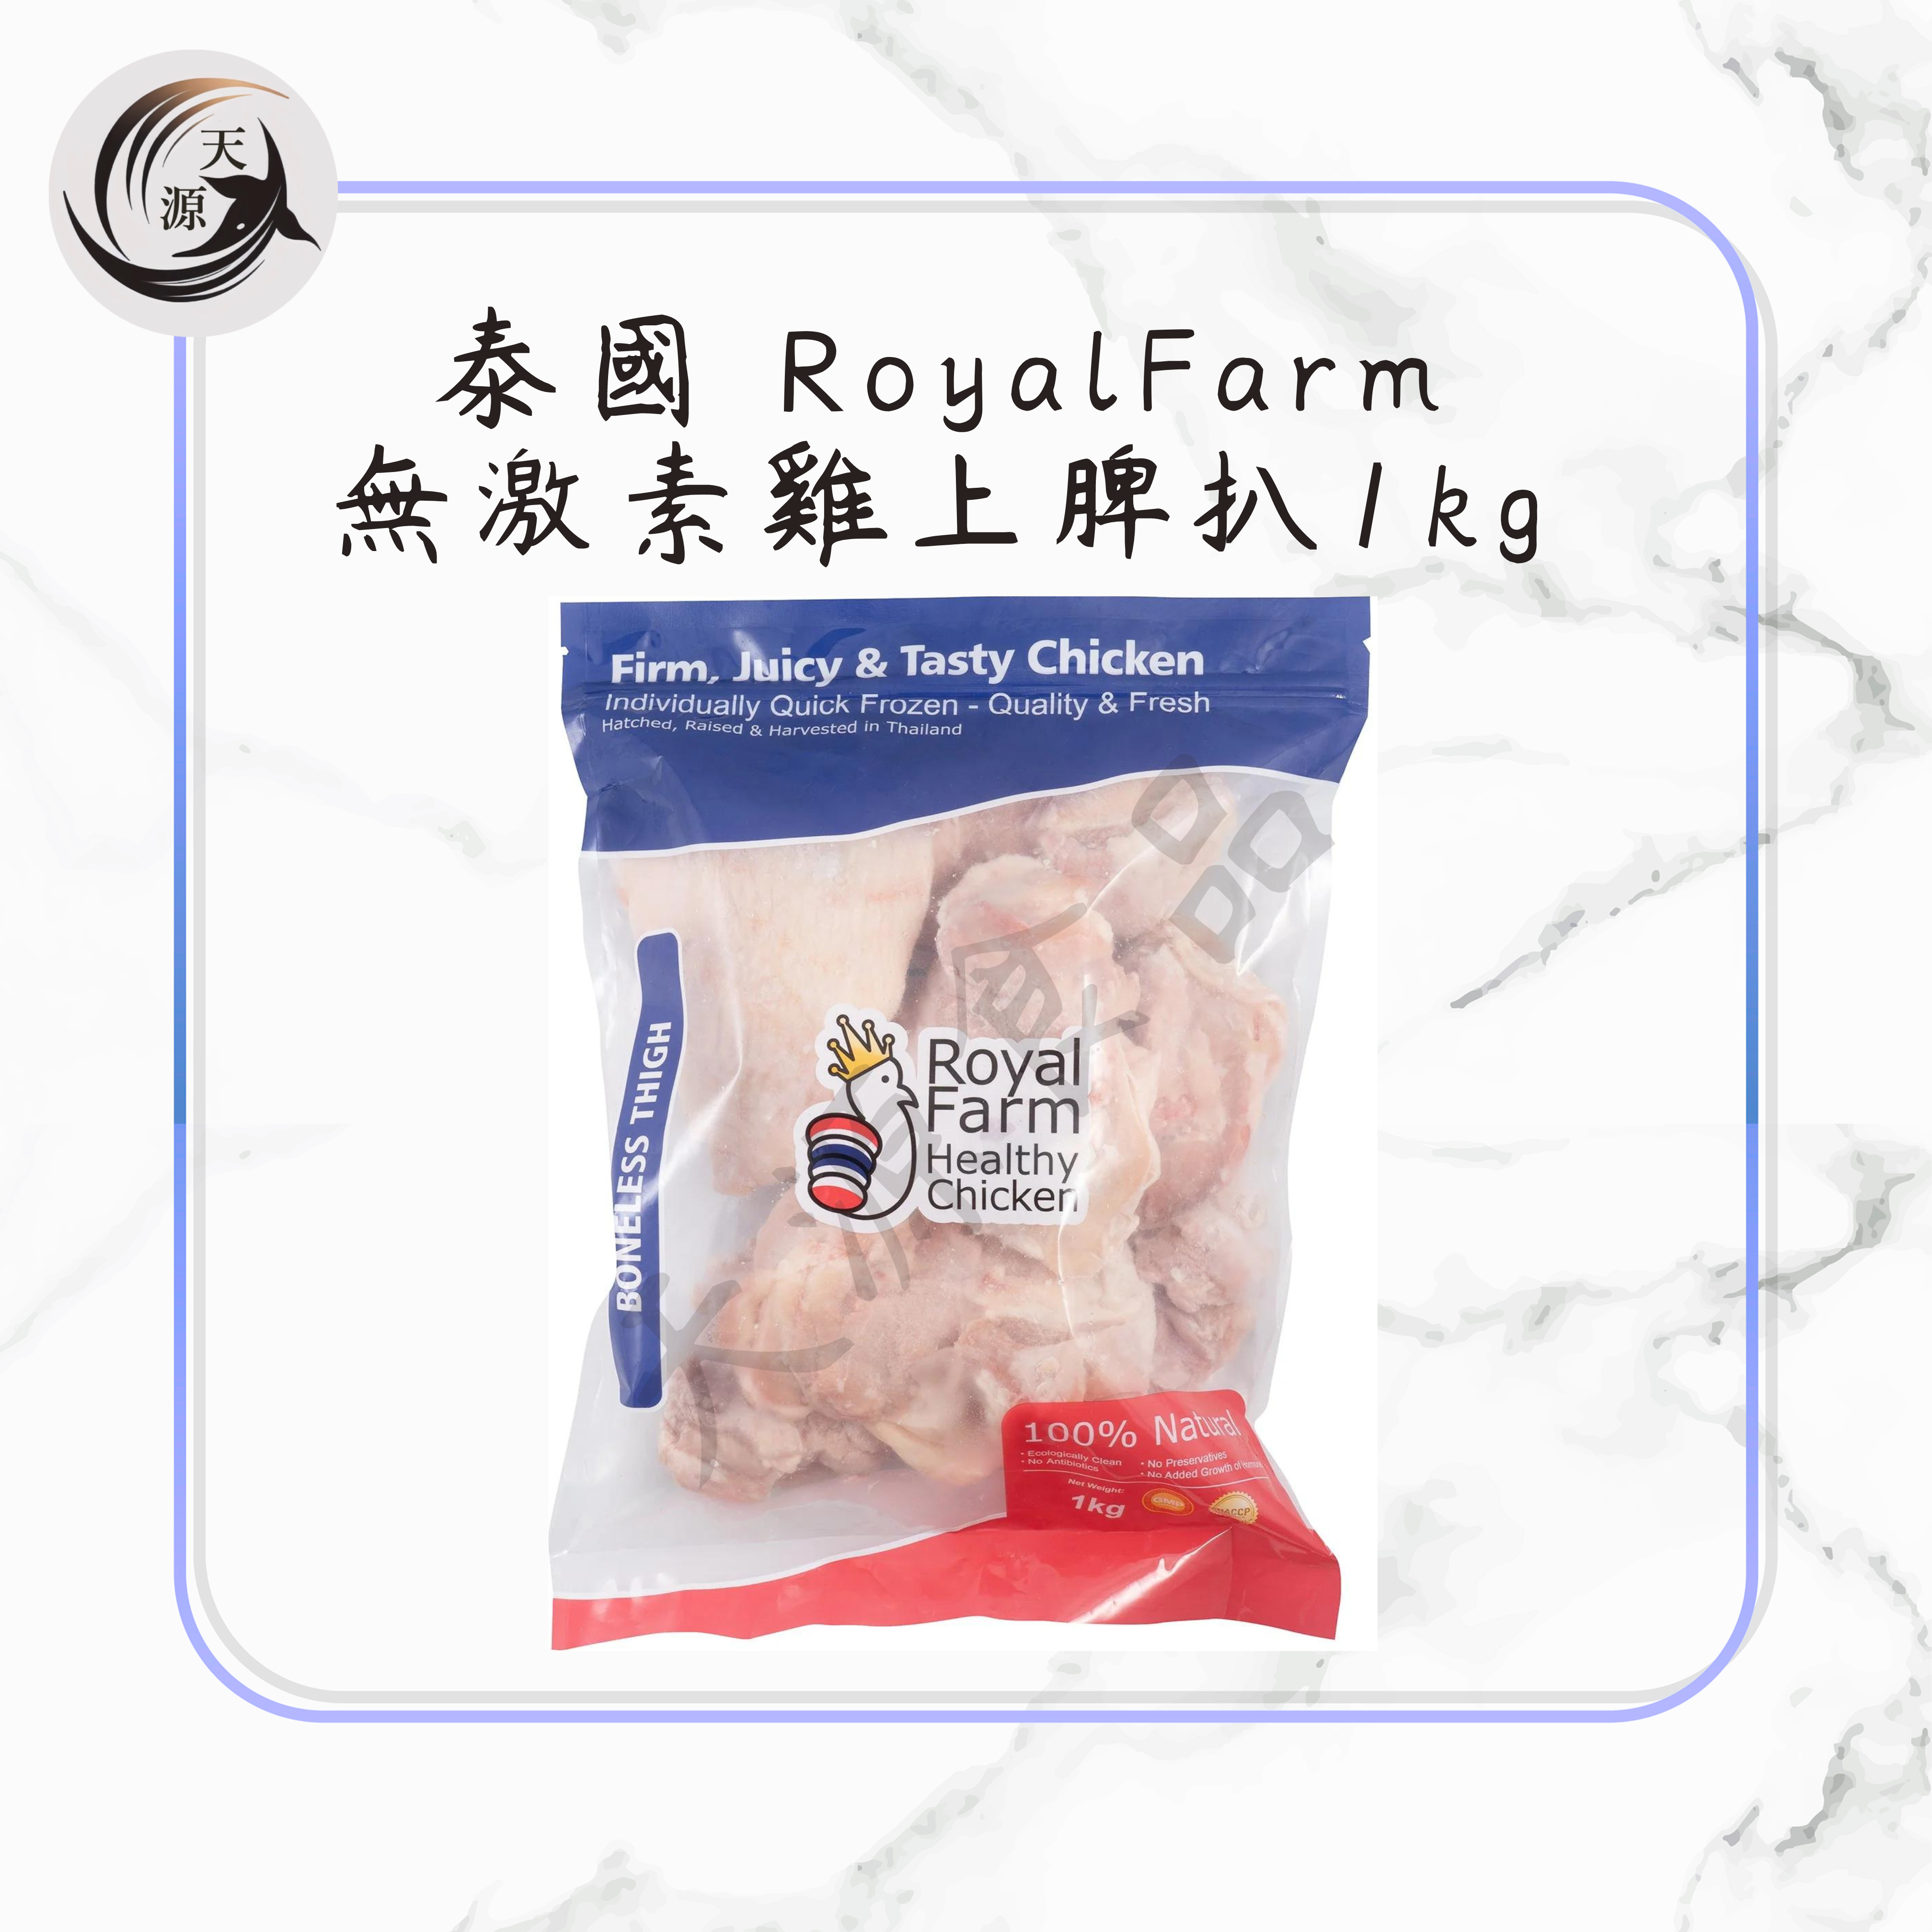 Thailand RoyalFarm hormone-free chicken steak 1kg